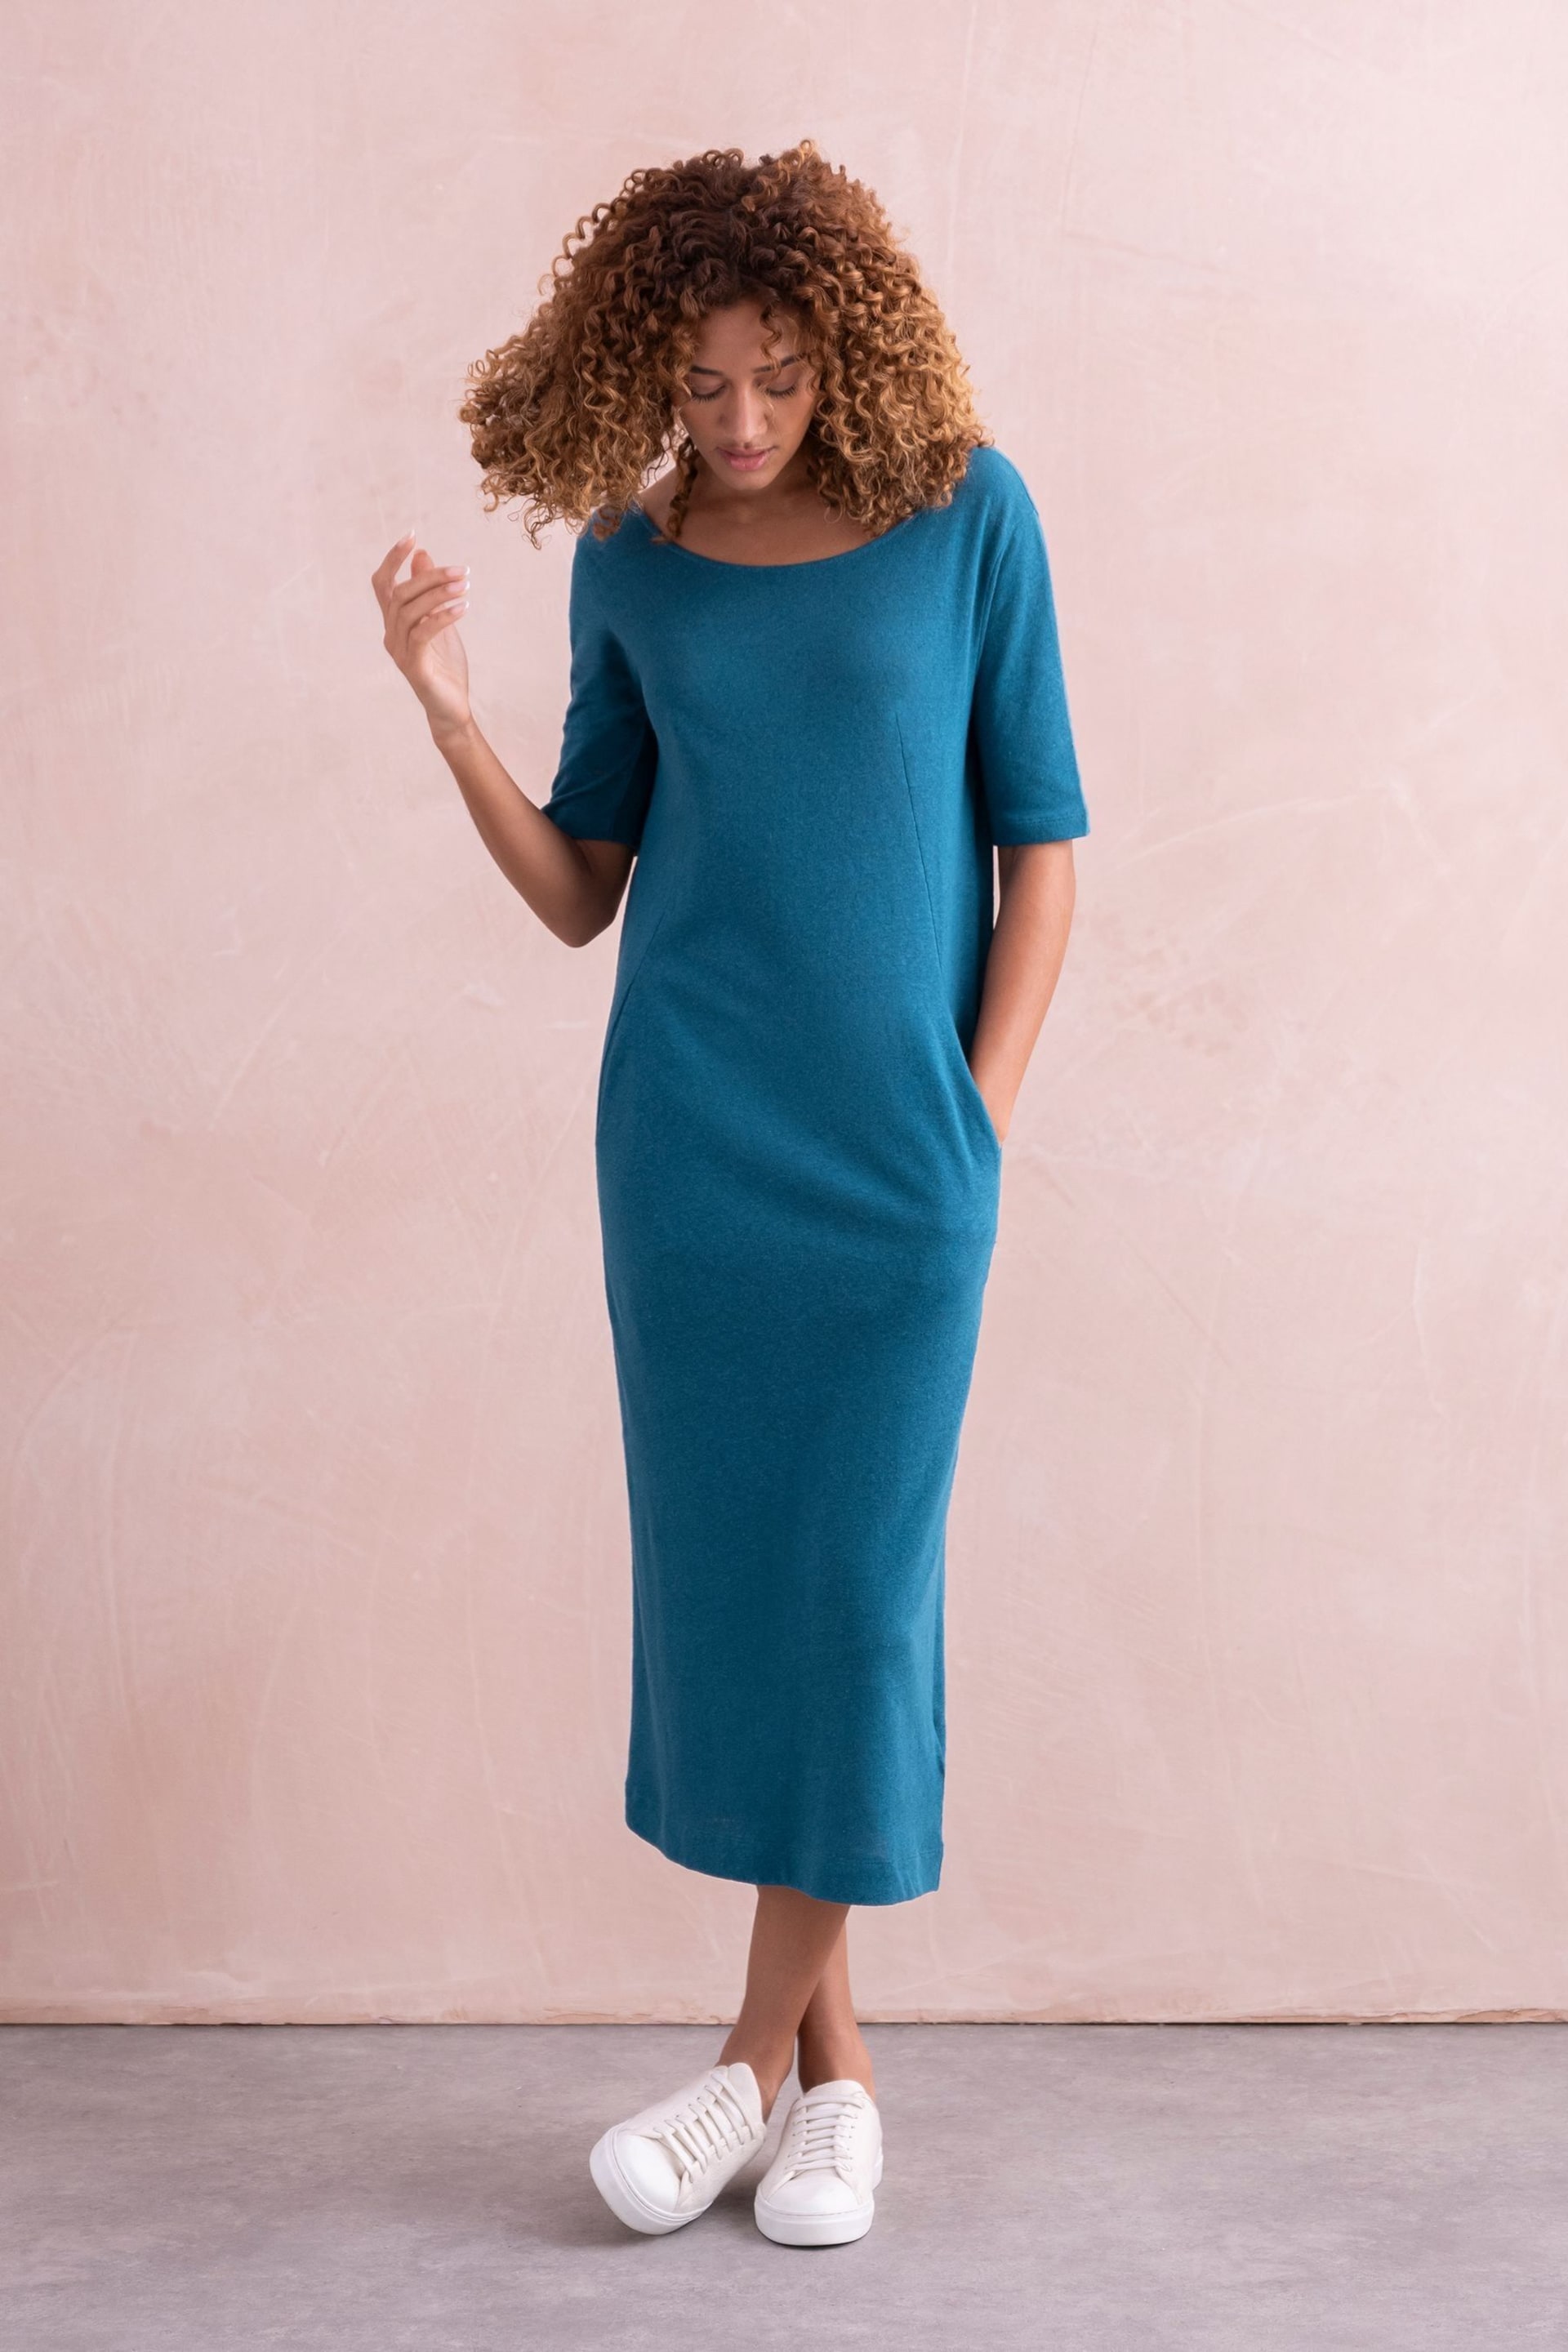 Celtic & Co. Blue Linen / Cotton Button Back Dress - Image 2 of 6